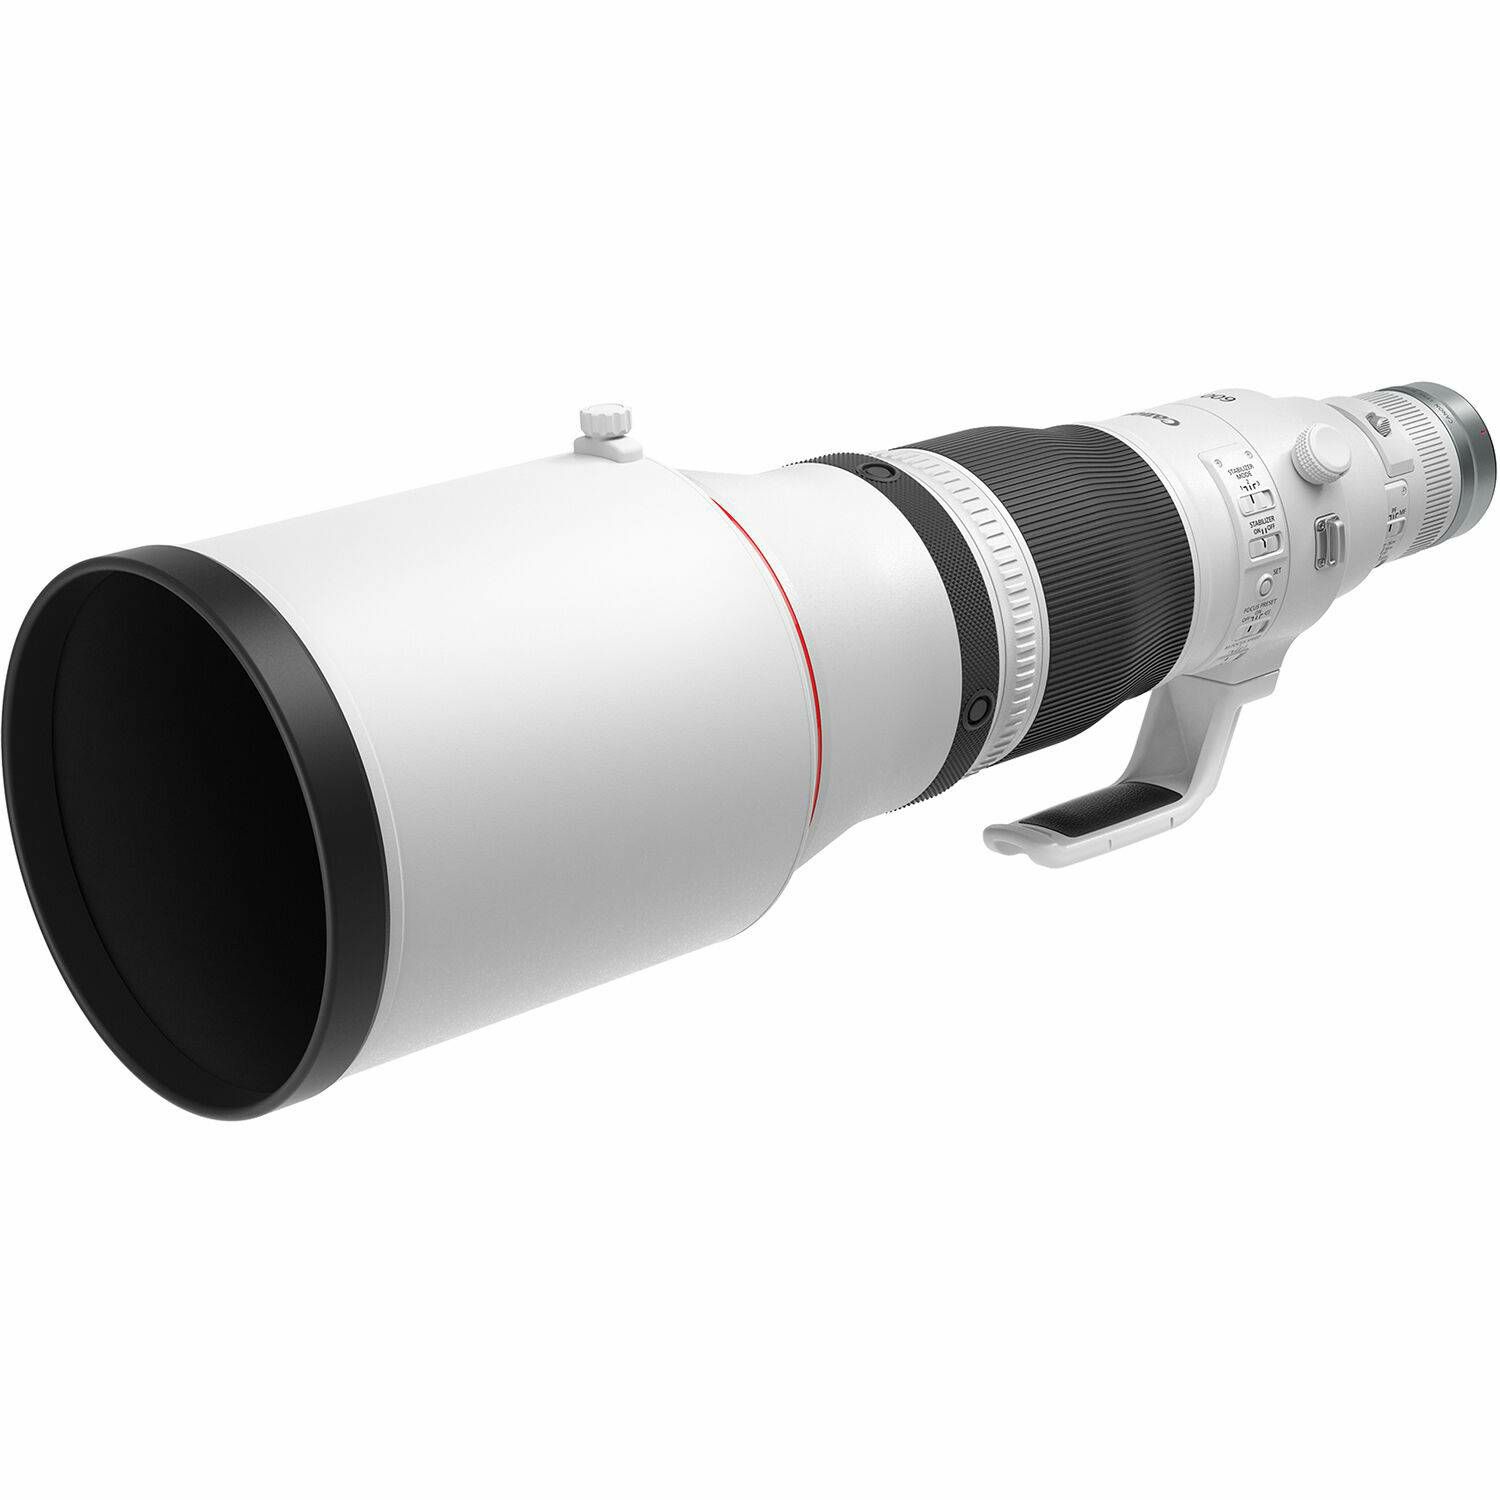 Canon RF 600mm f/4L IS USM telefoto objektiv